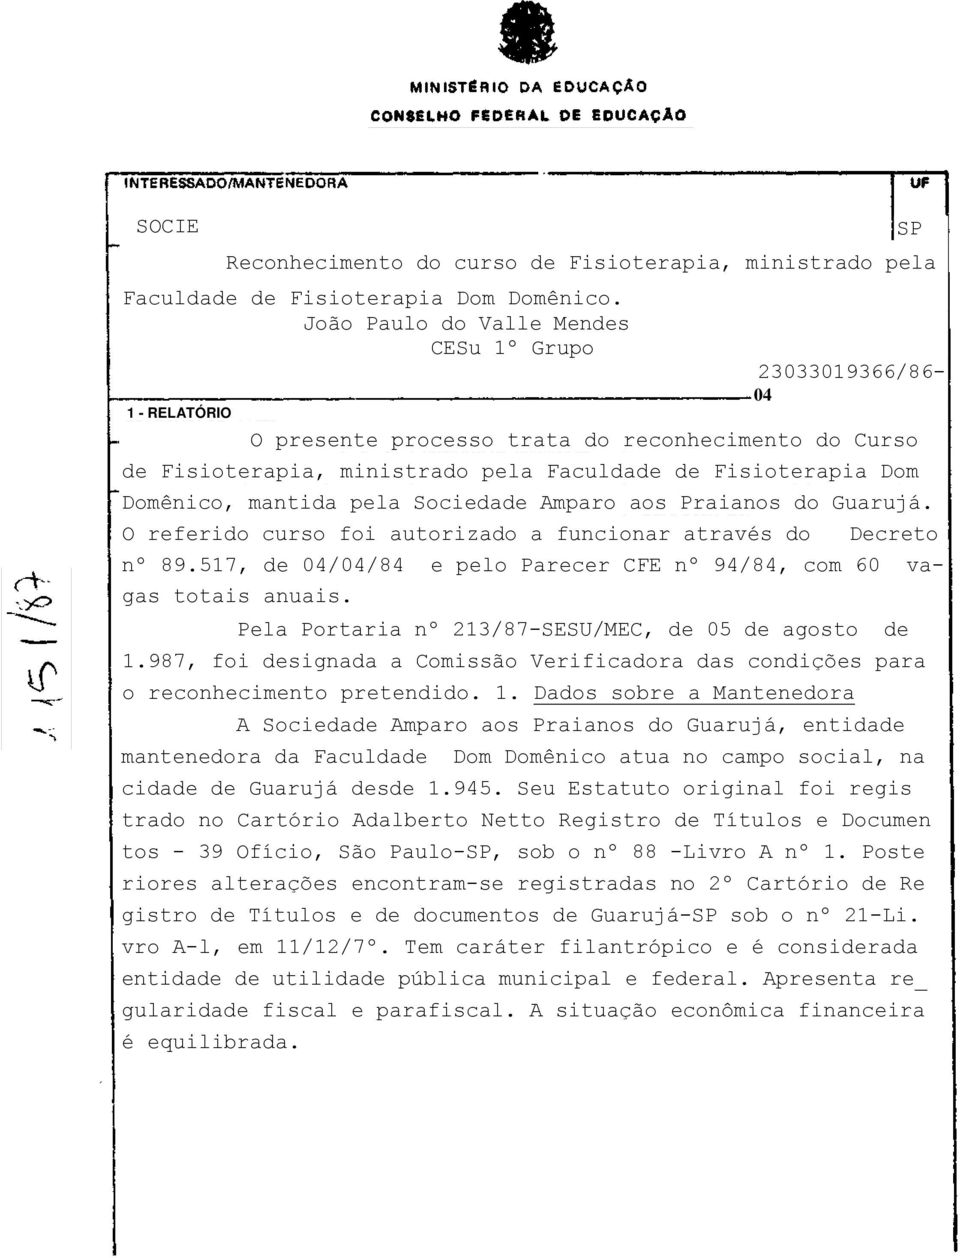 Domênico, mantida pela Sociedade Amparo aos Praianos do Guarujá. O referido curso foi autorizado a funcionar através do Decreto nº 89.